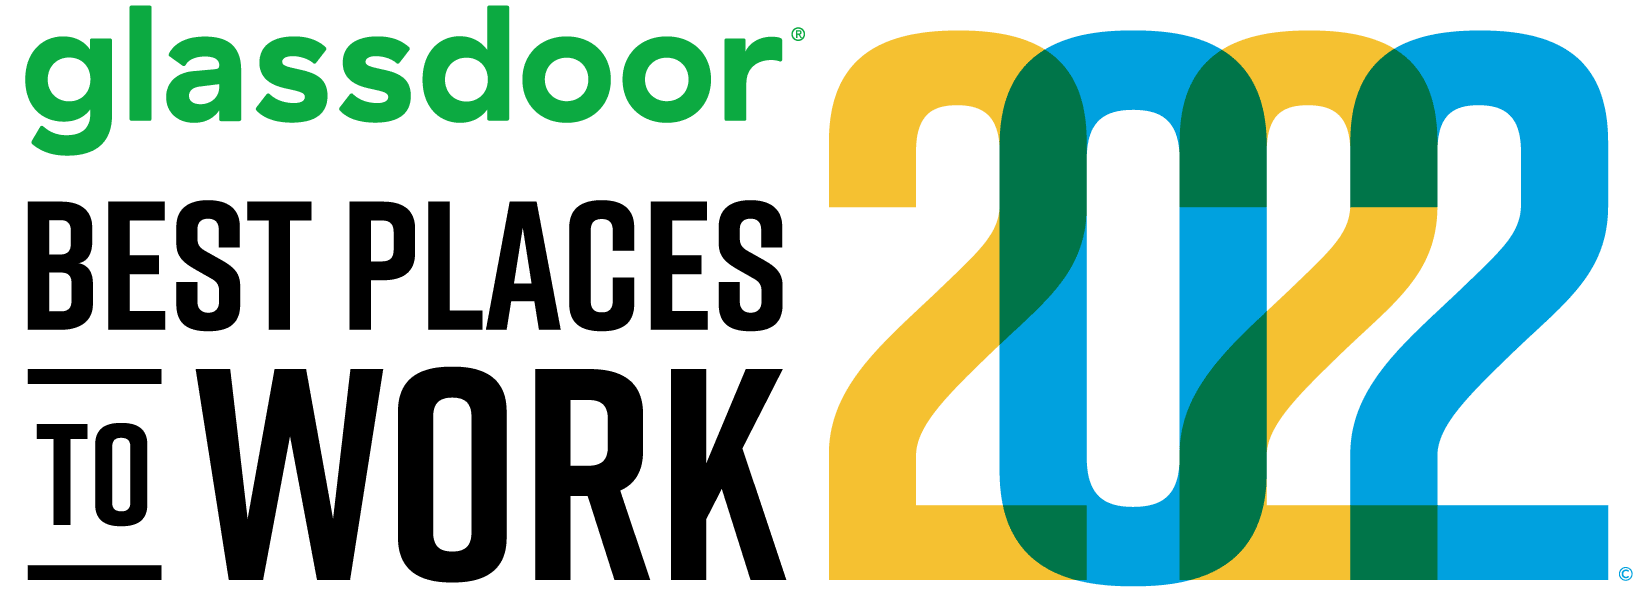 Glassdoor best places to work 2022